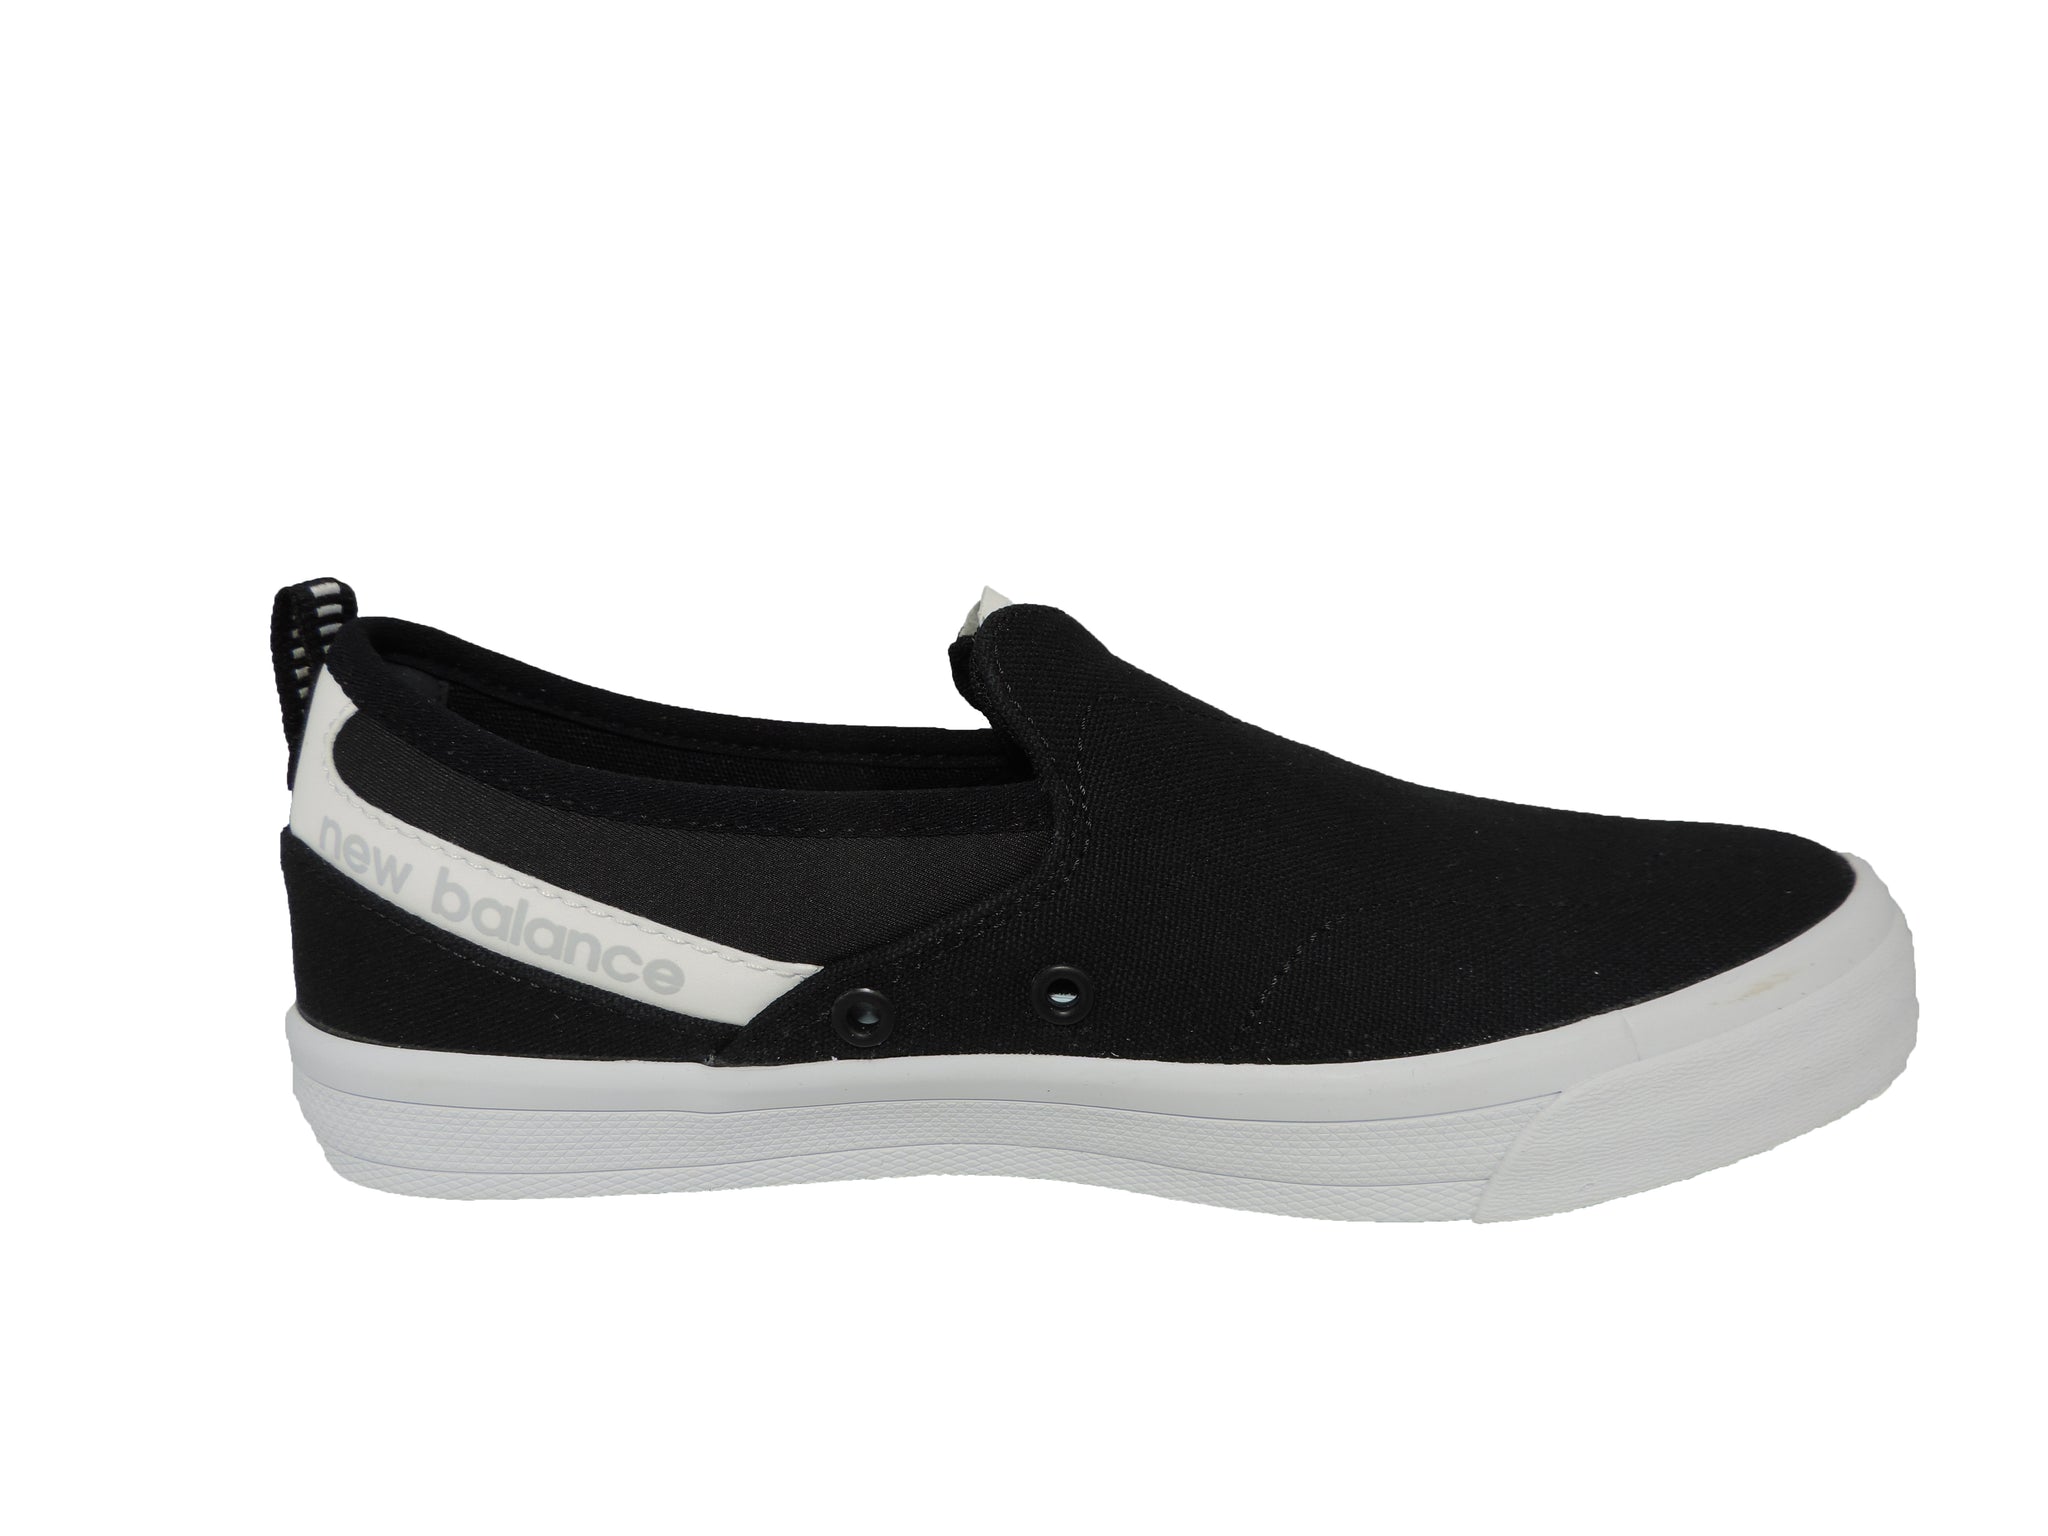 101v1 Skate Shoe – Got Your Shoes